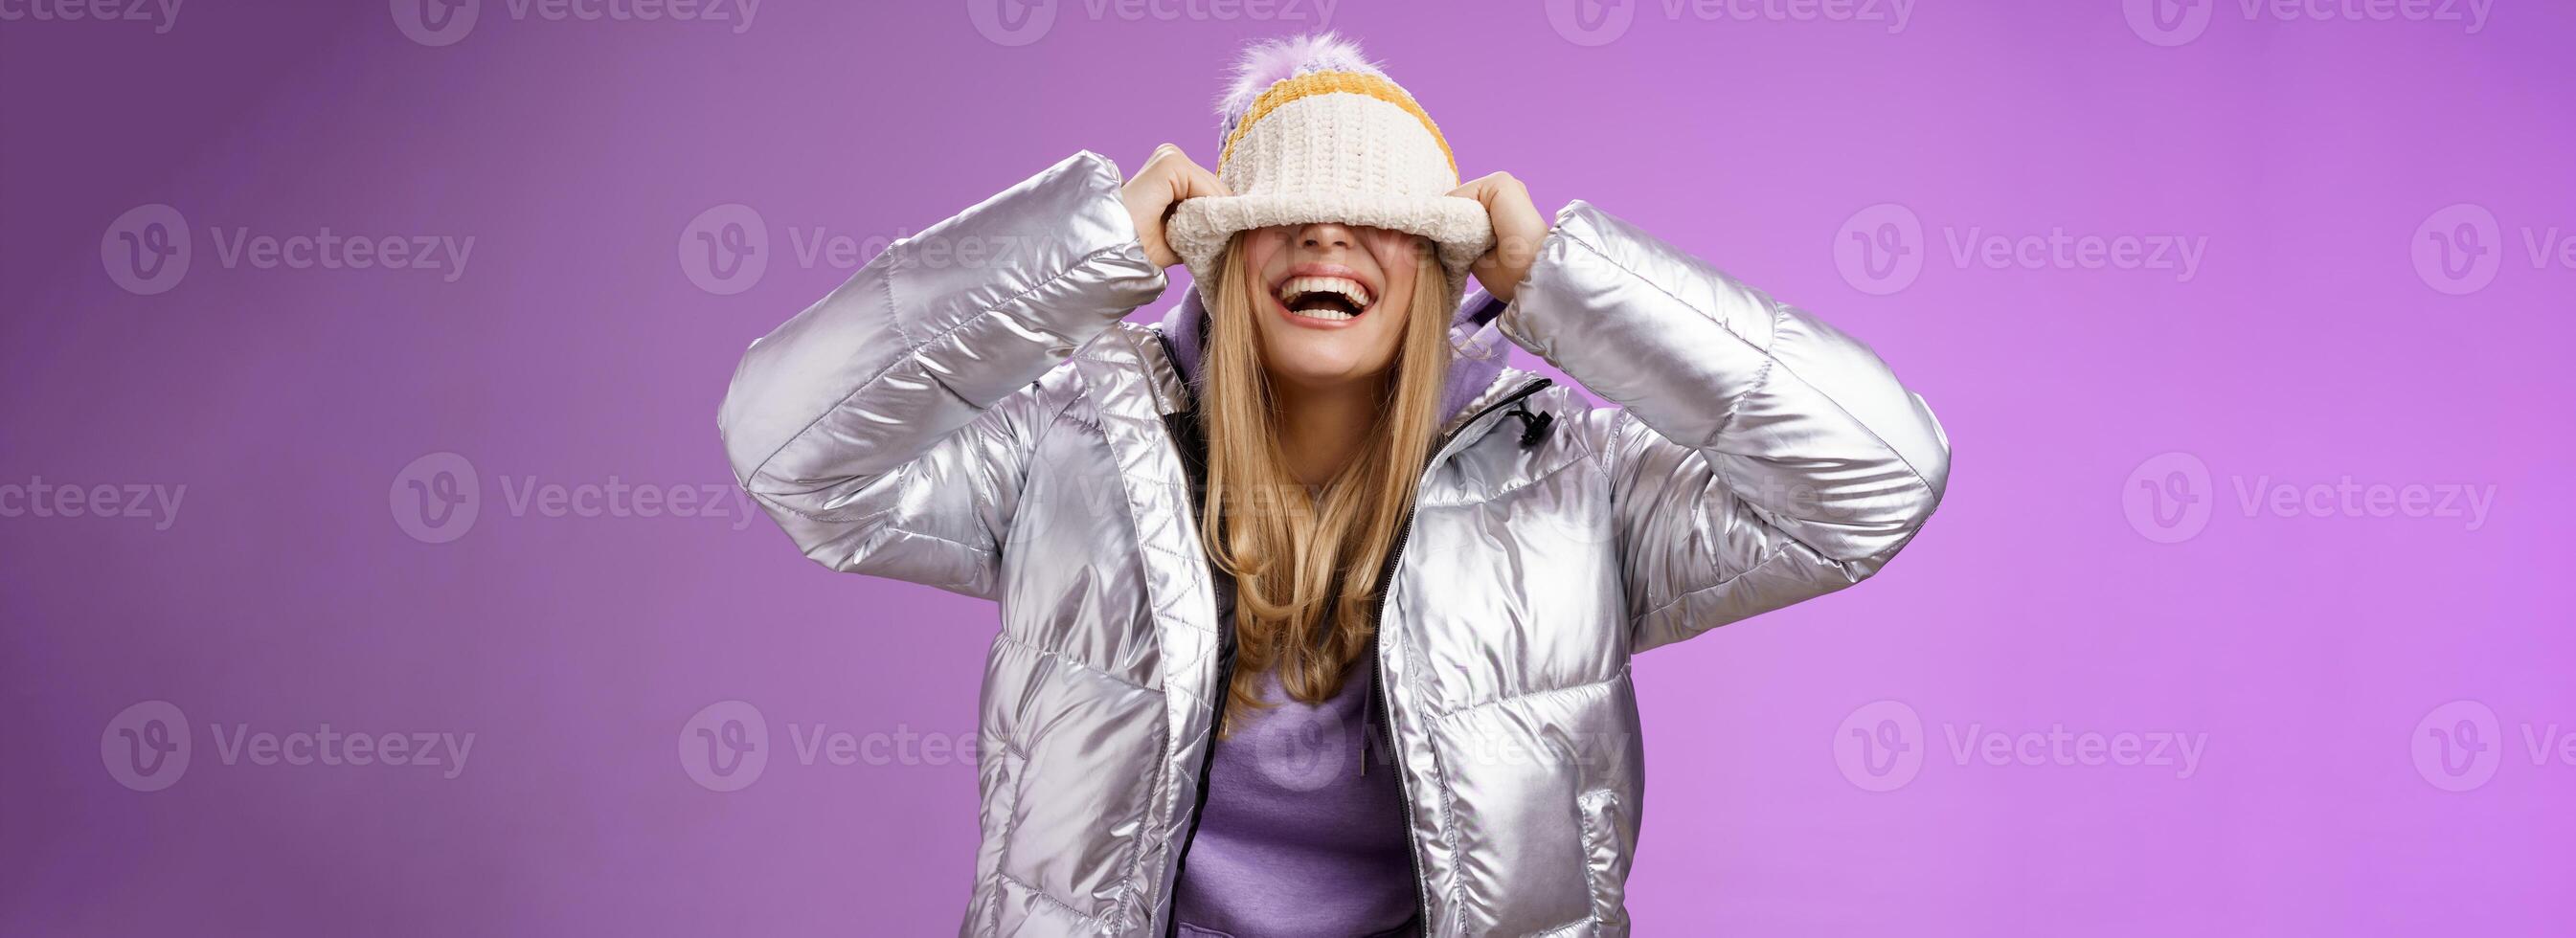 Erfreut sorglos charmant glücklich jung blond Frau haben Spaß versteckt Gesicht ziehen Hut Augen lächelnd Lachen freudig genießen Winter sonnig Tag spielen Geschwister Stehen amüsiert lila Hintergrund foto